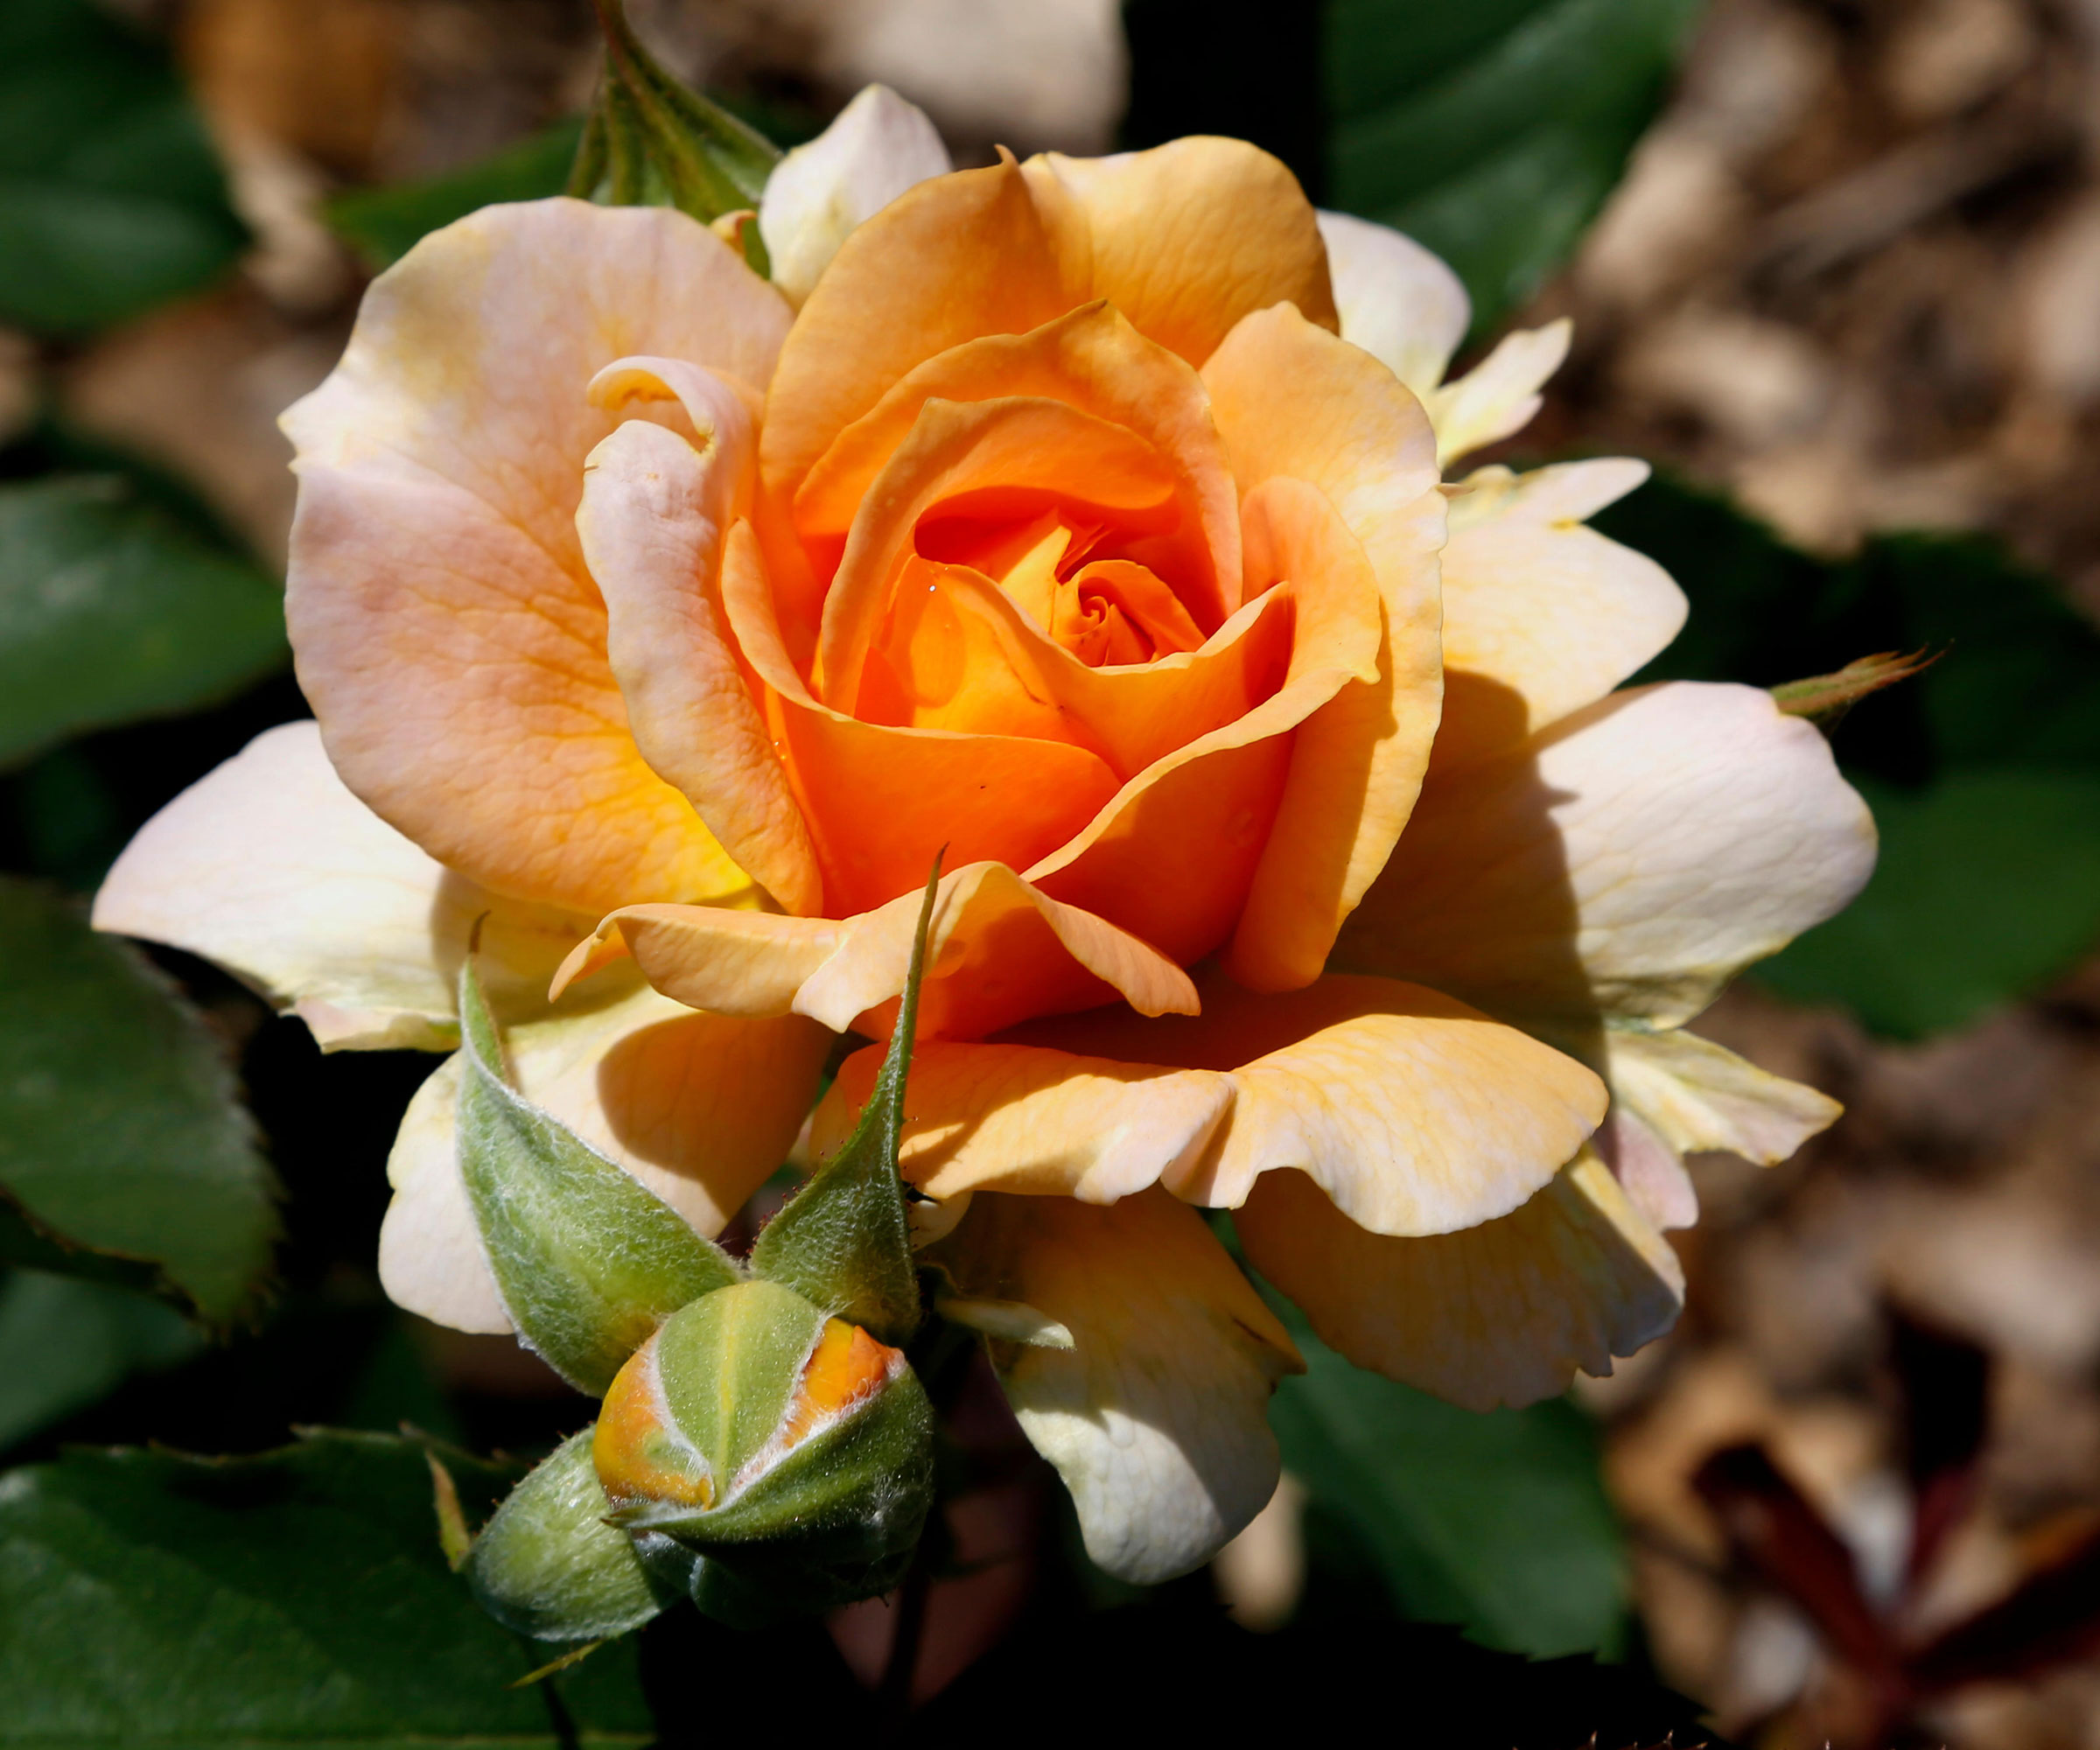 orange Honey Perfume rose in bloom